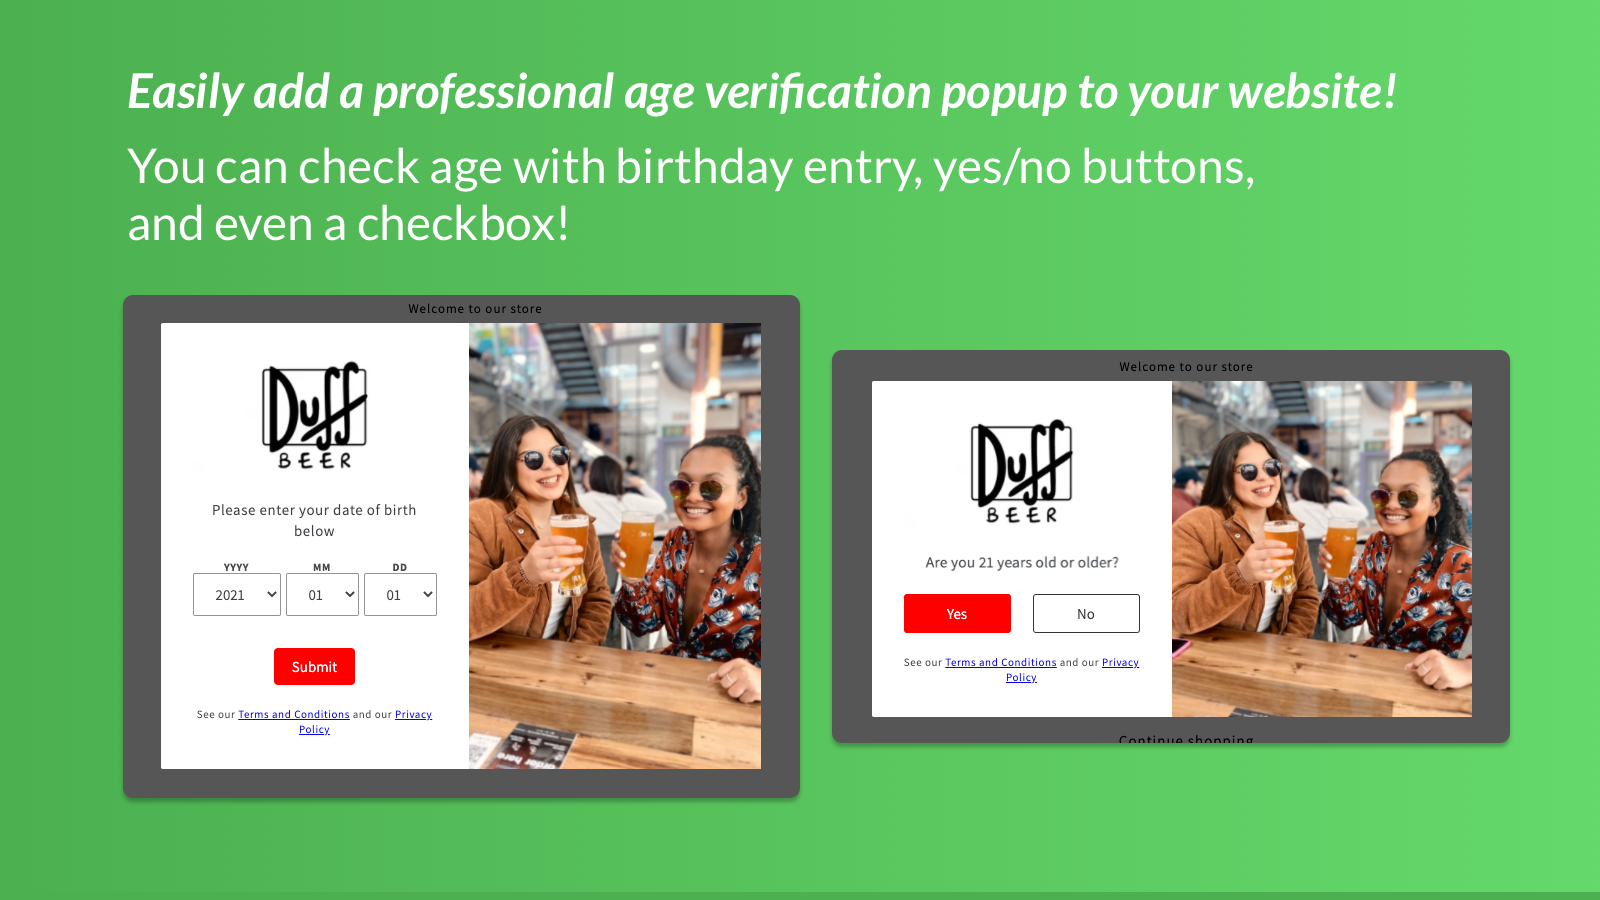 Profession age verification popup